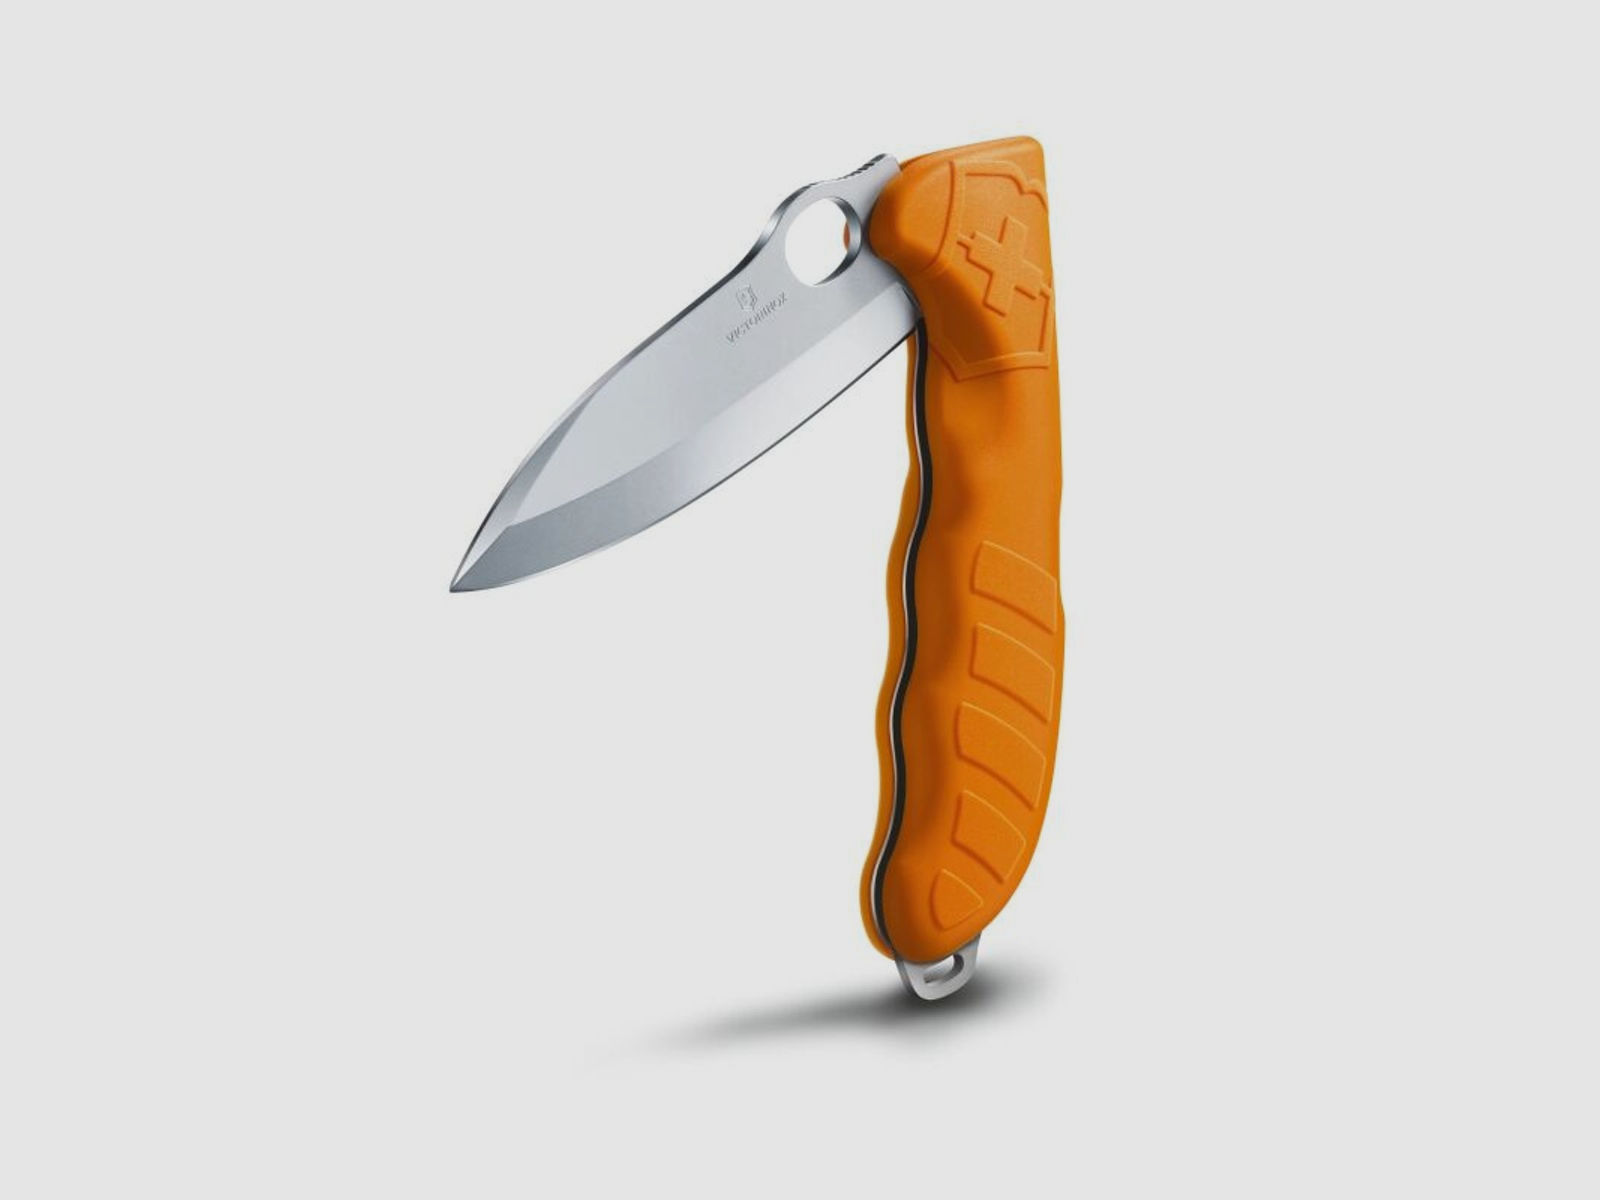 Victorinox Messer Hunter Pro Orange mit Öse